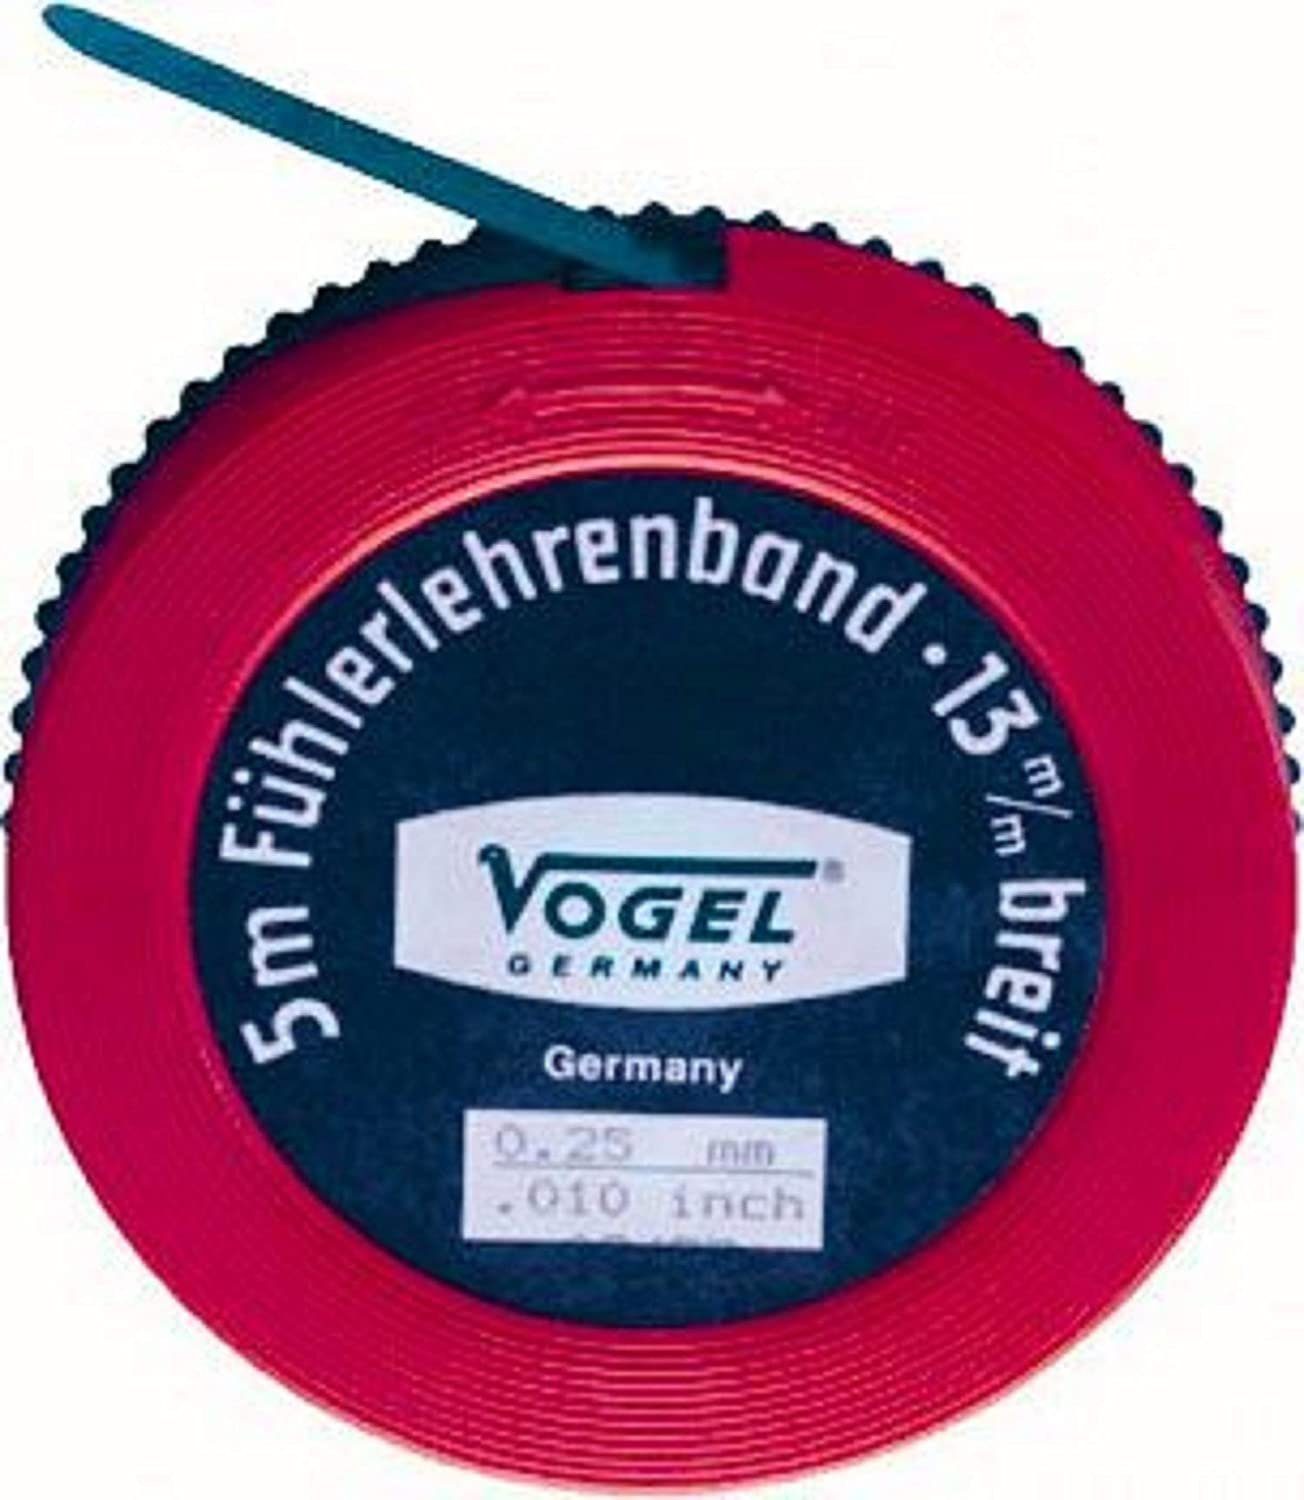 mm 0,10 Vogel Federstahl Fühlerlehre Fühlerlehrenband Germany Vogel Germany 5 m Messbereich